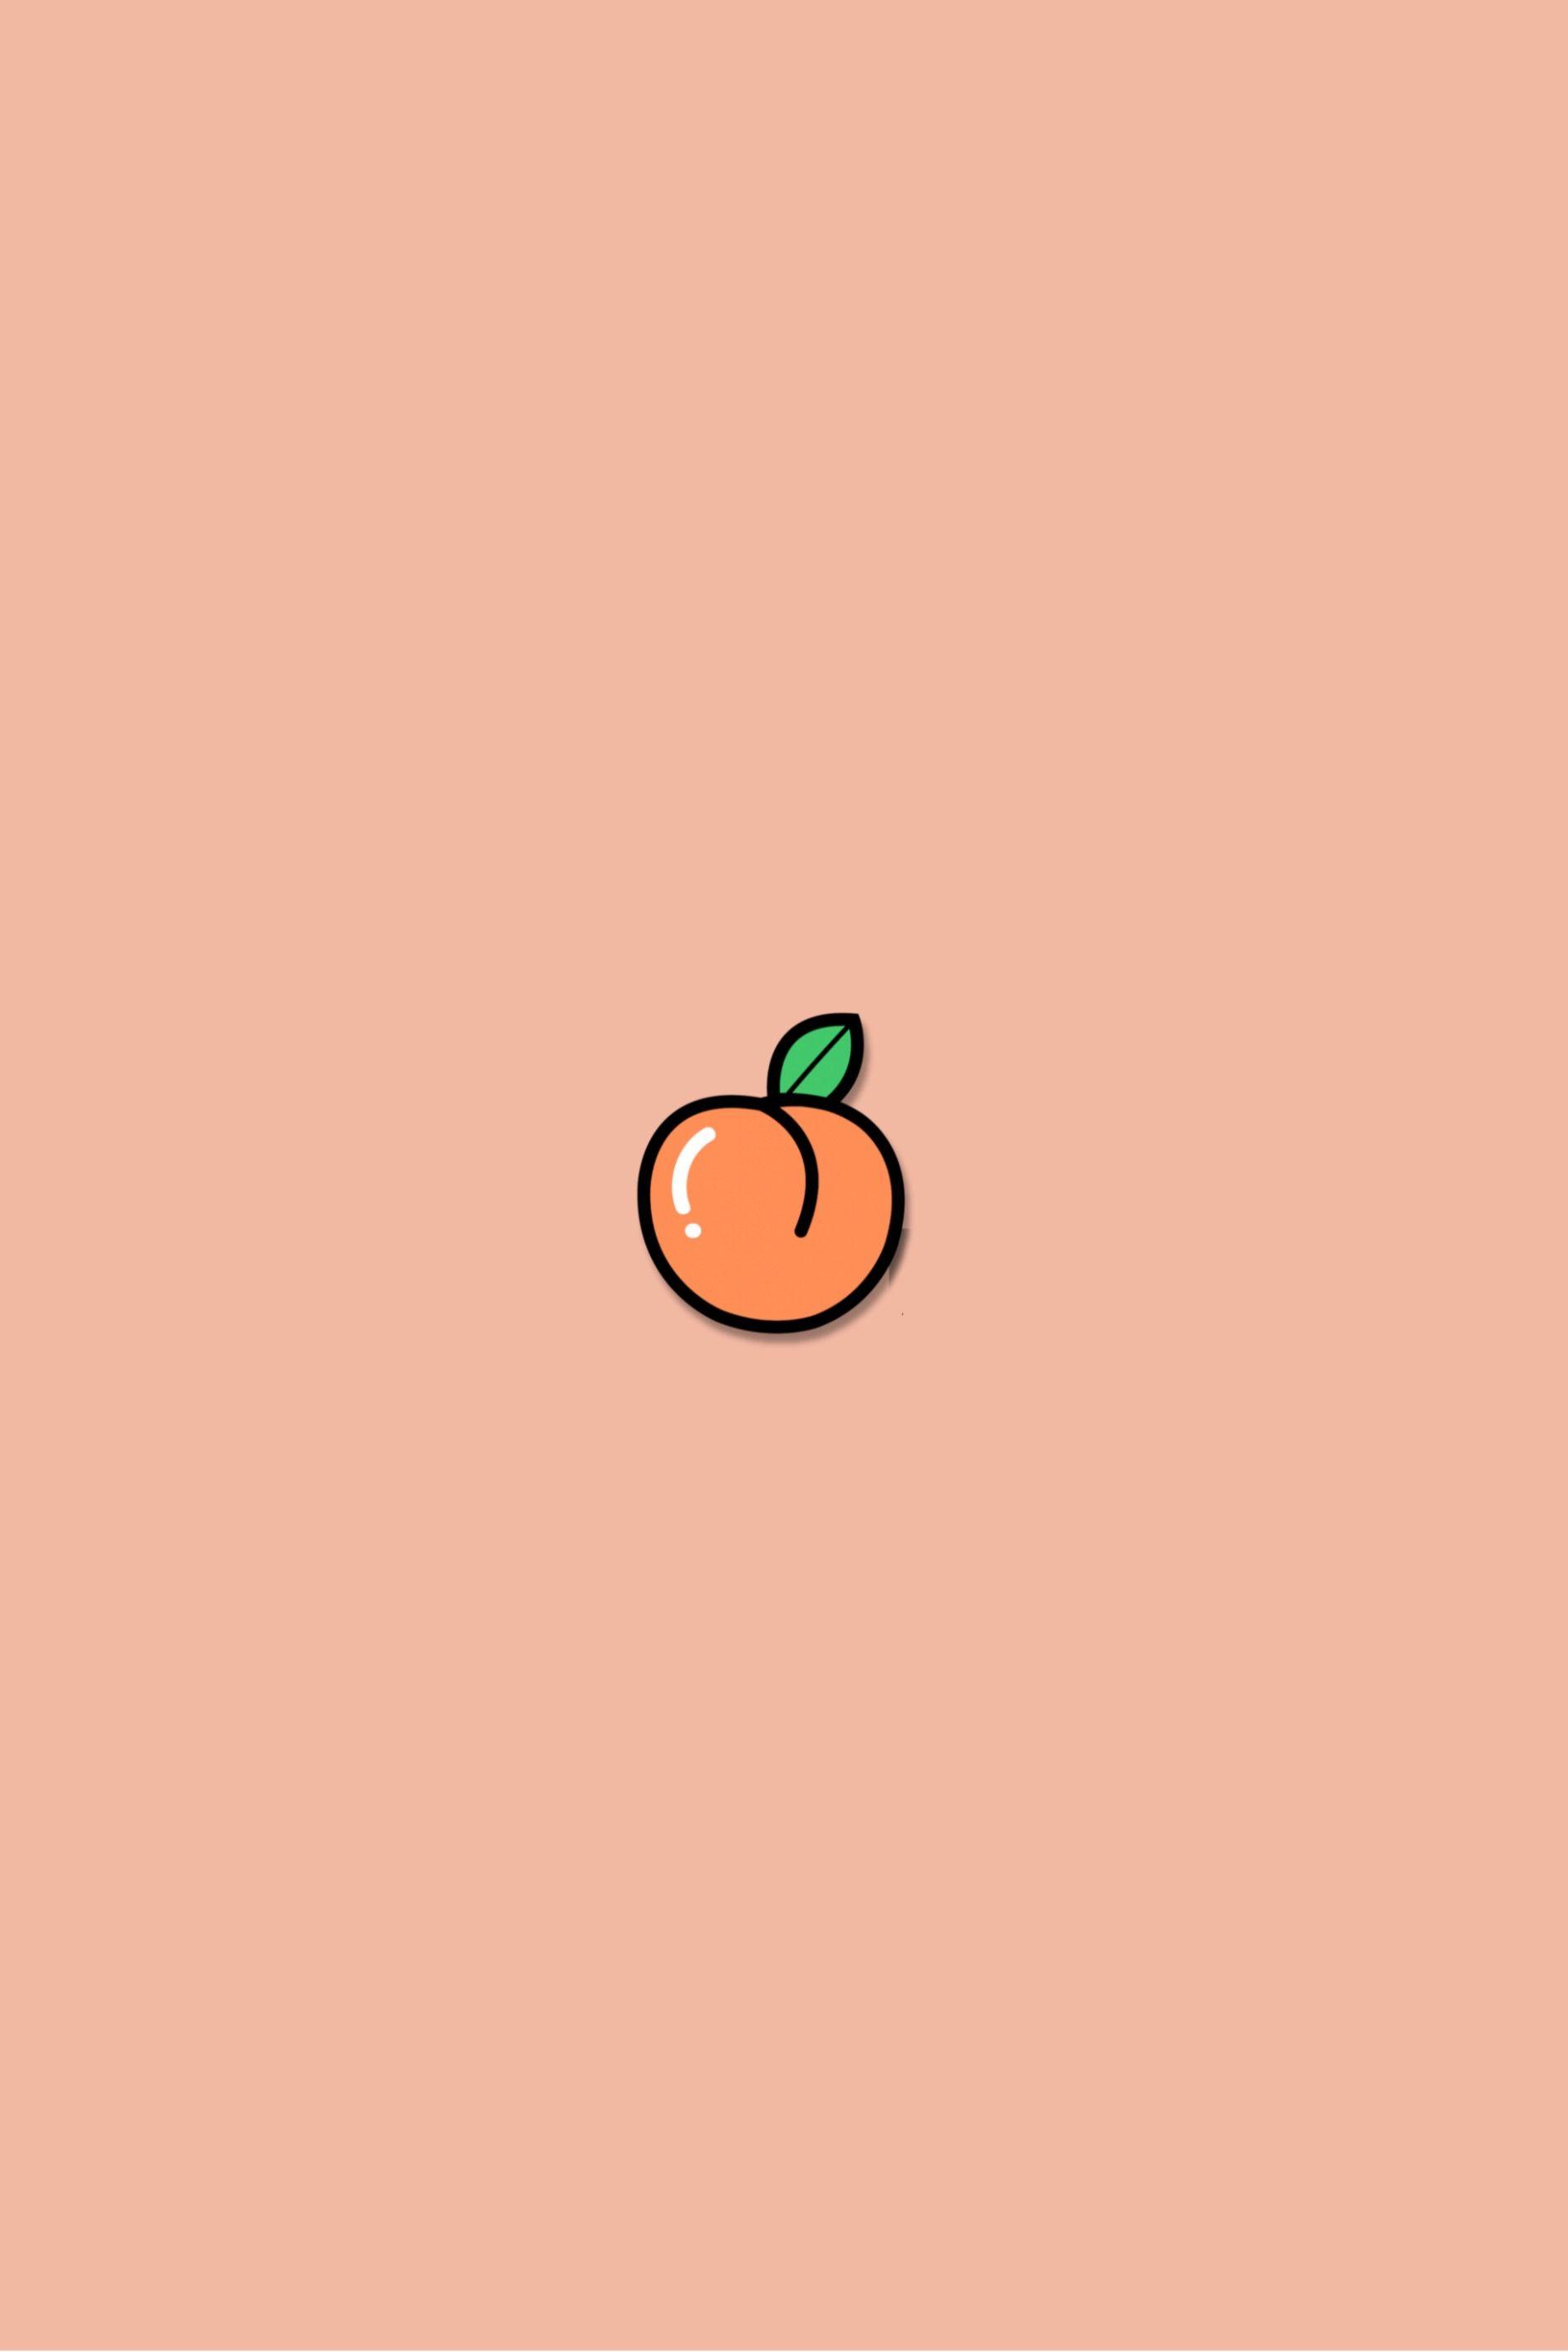 About cute in Cute Peach HD phone wallpaper  Pxfuel